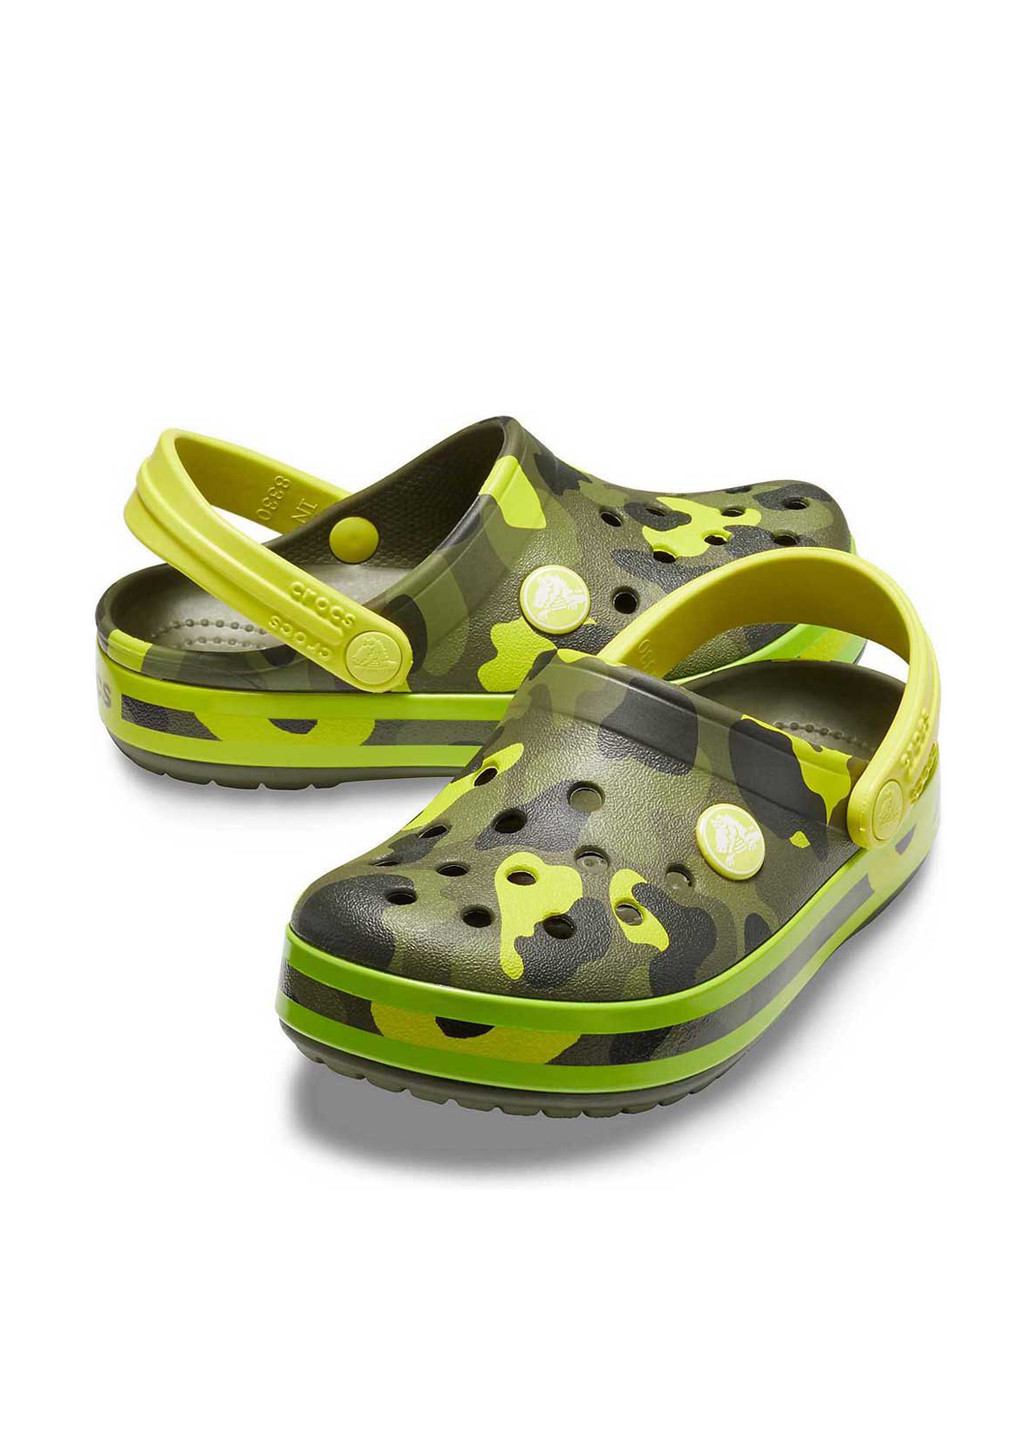 Зеленые сабо Crocs с перфорацией